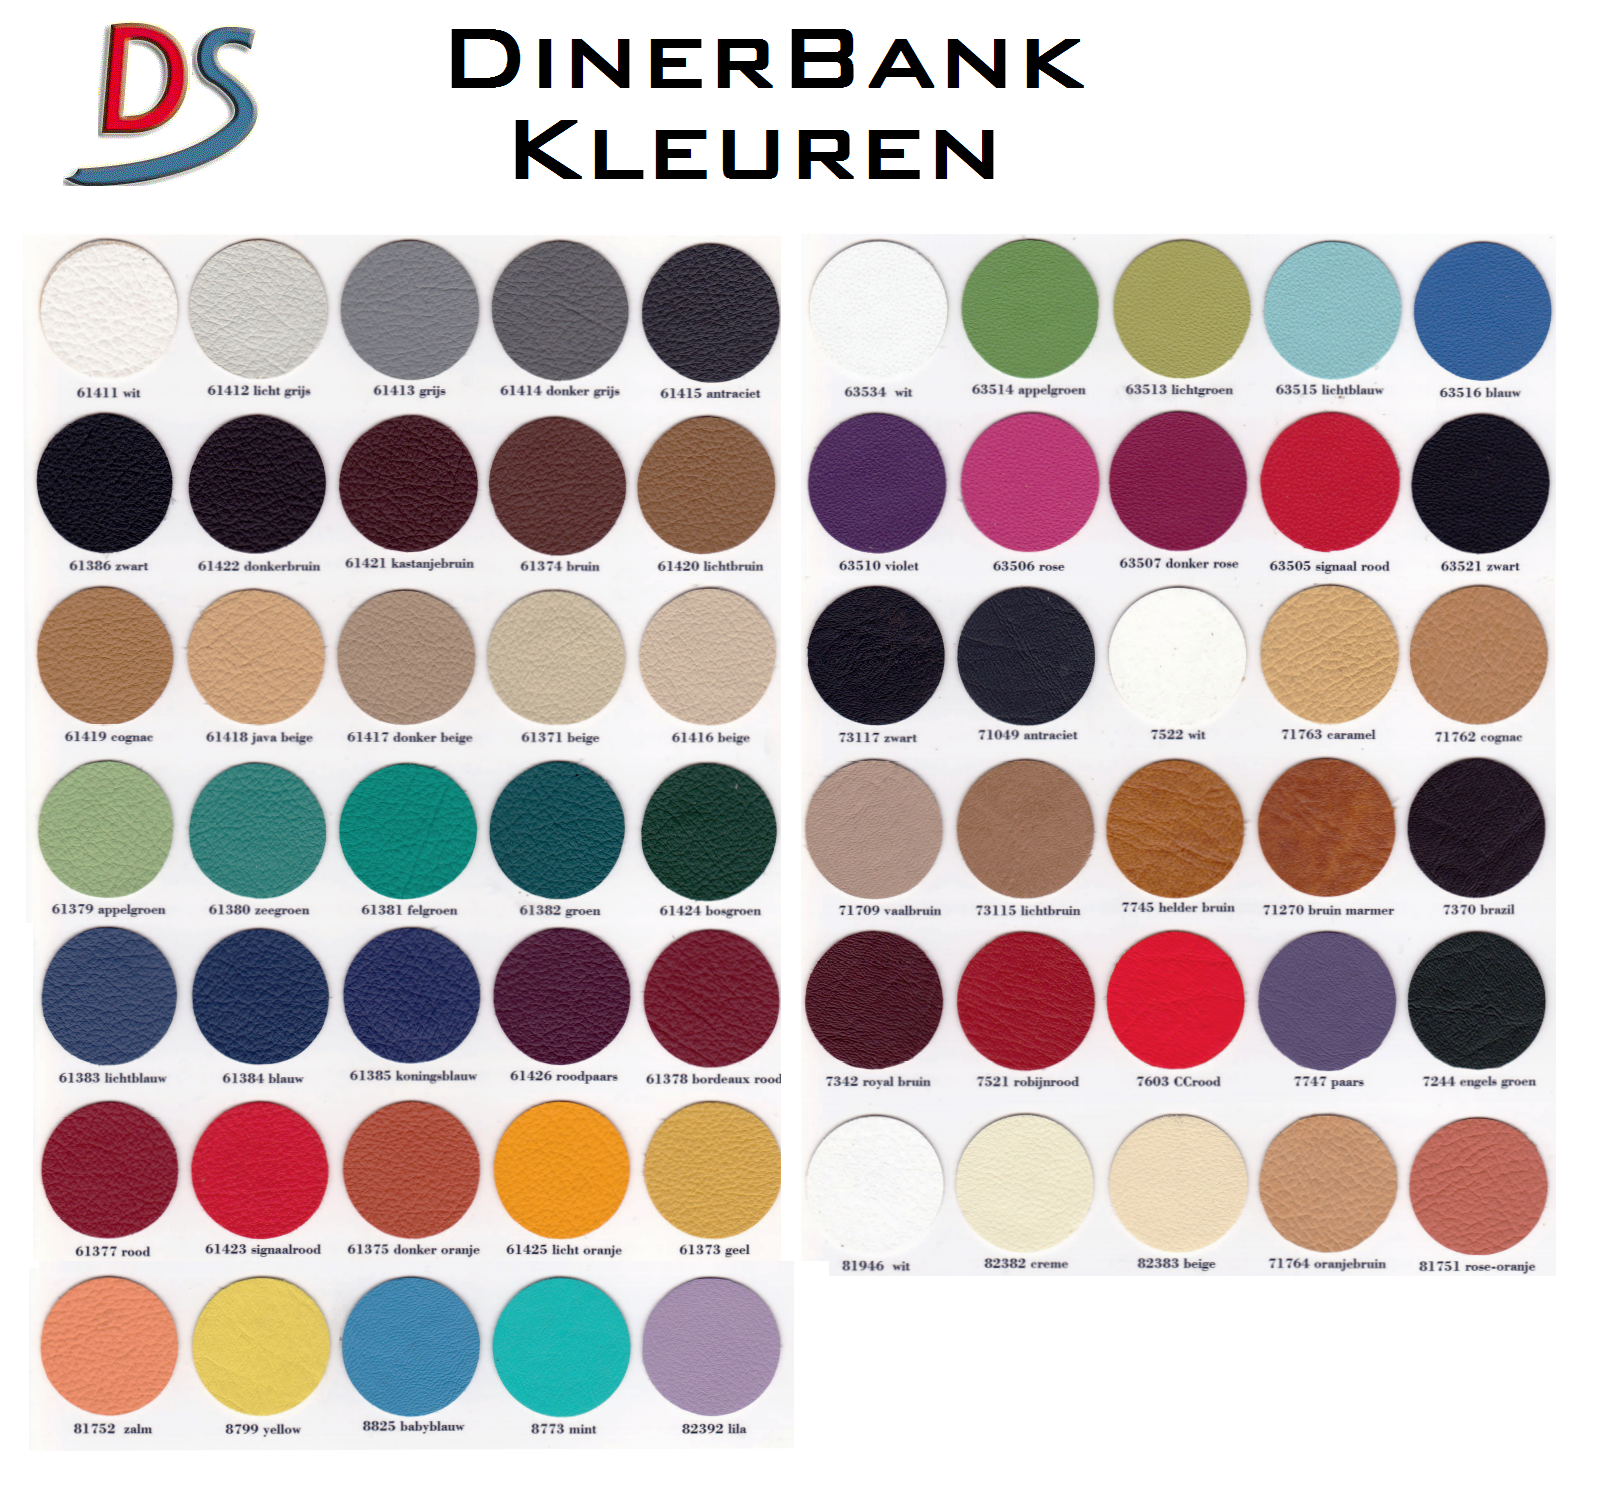 DinerBank Kleuren